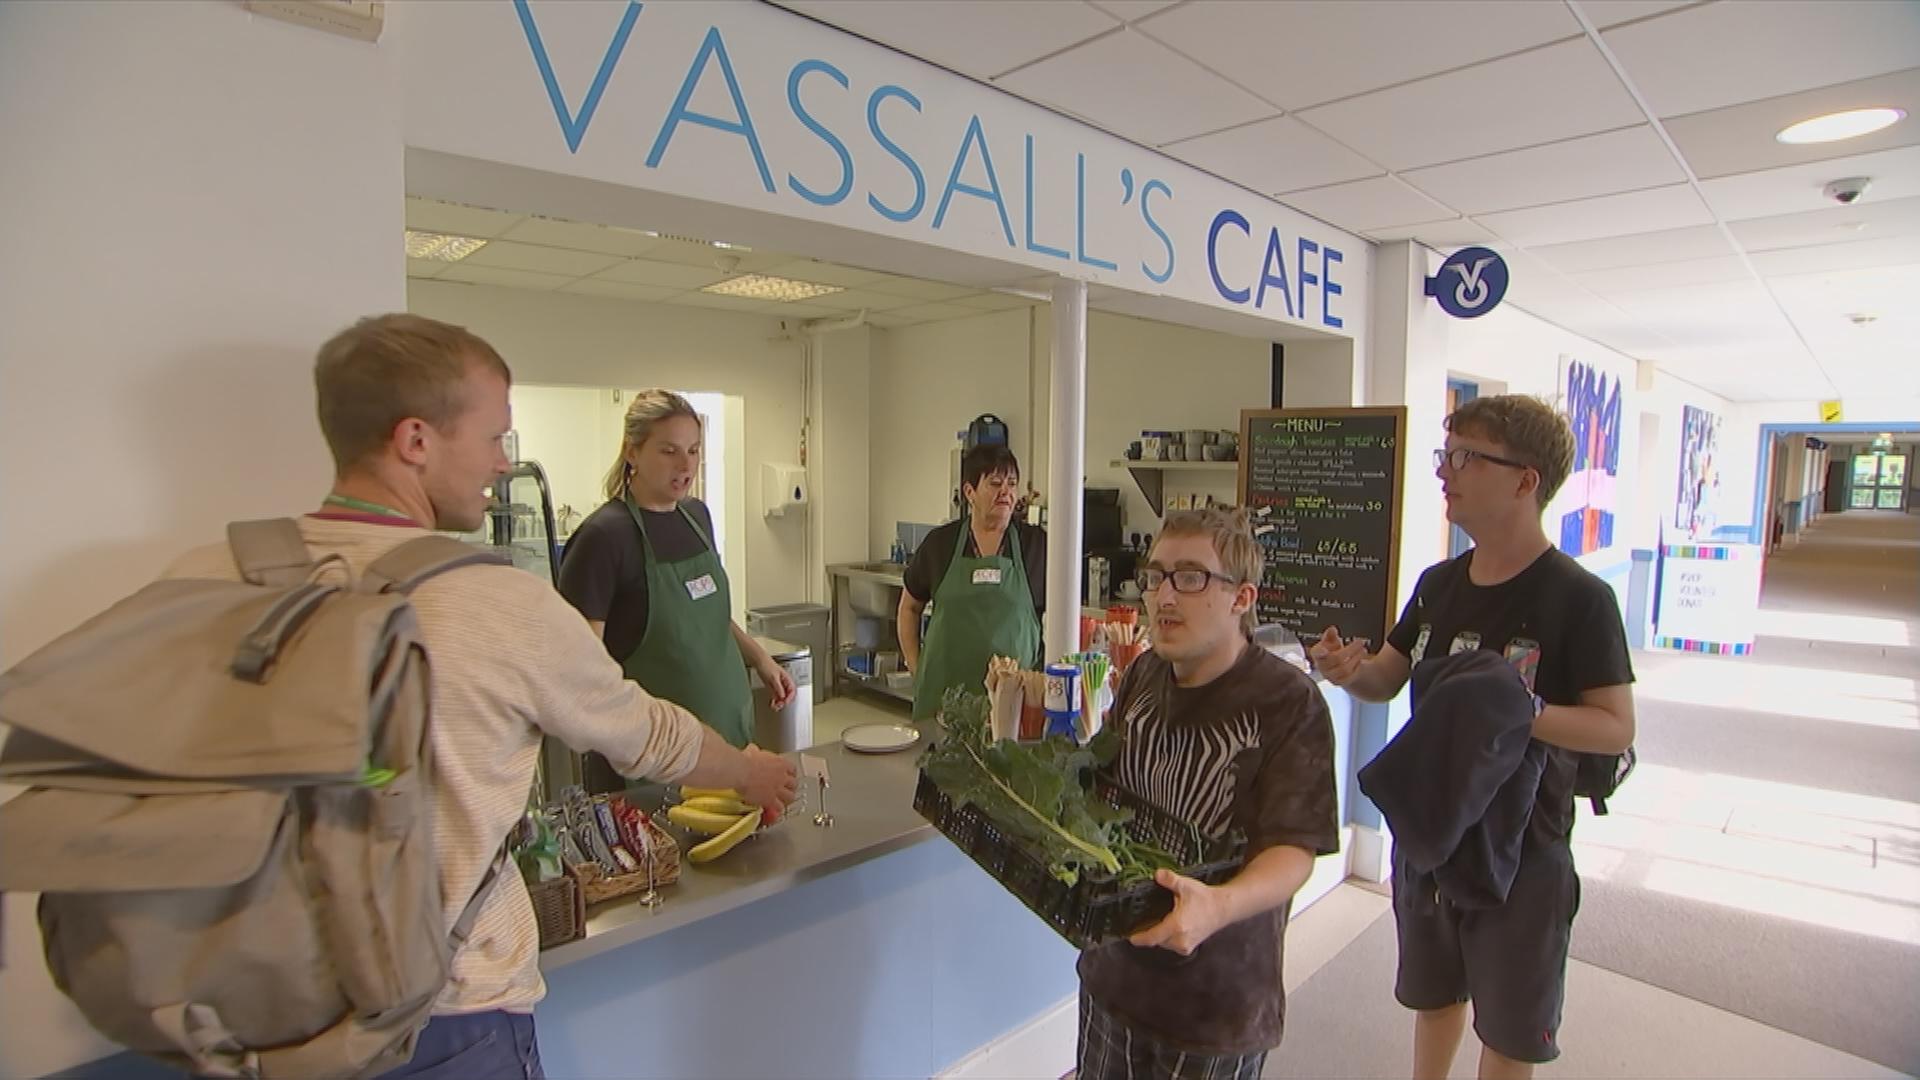 Vassall Centre Café in Bristol mit Angestellten und Kunden